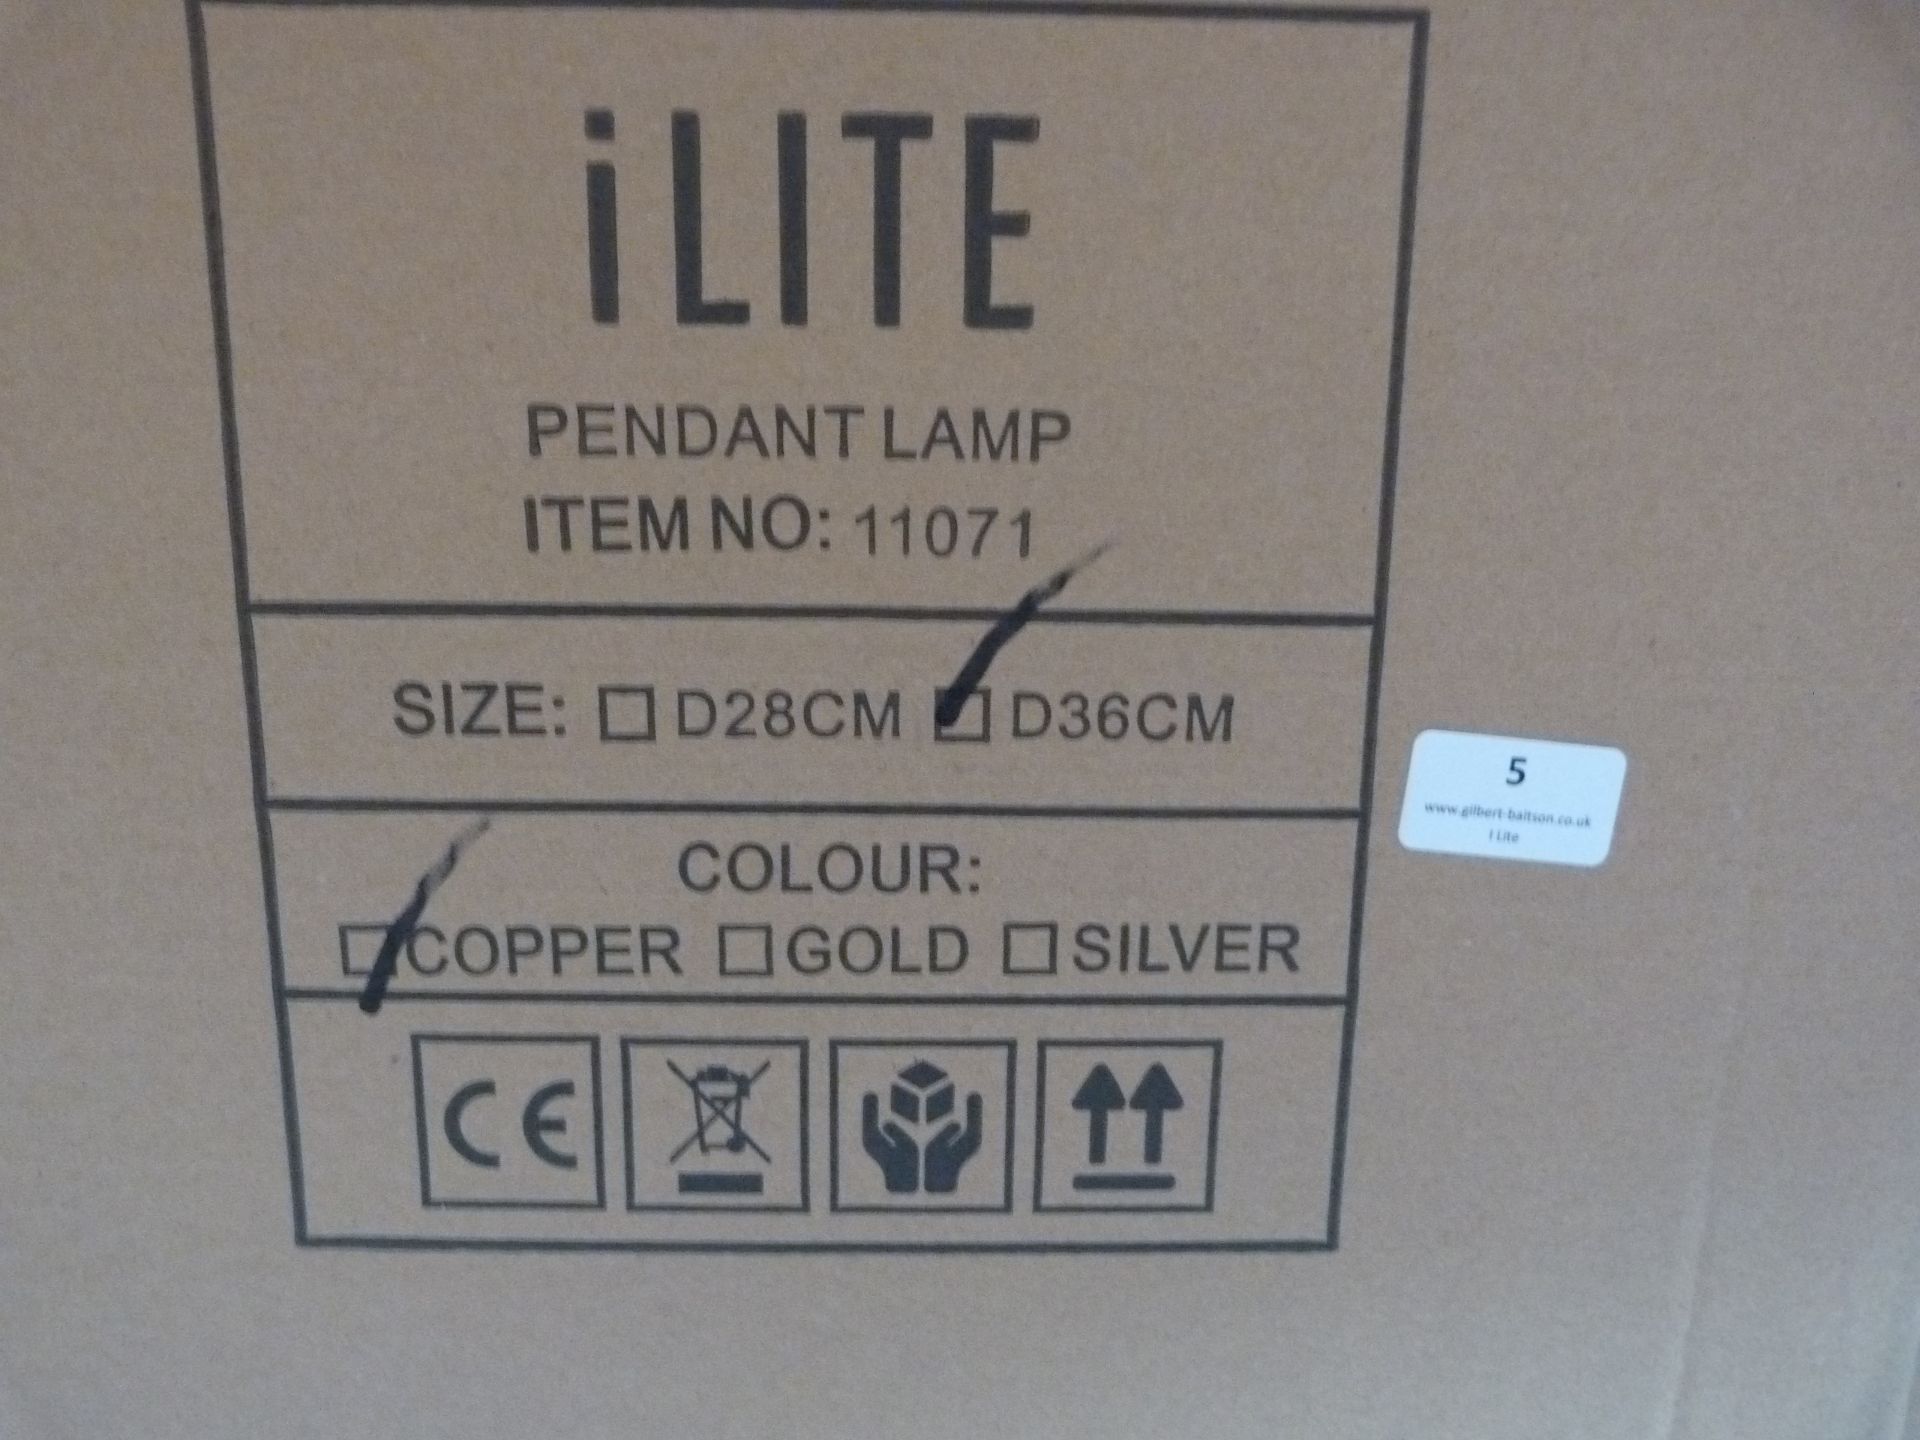 *36 ILite Pendant Lamps Item.11071, Size: D36CM (copper) - Image 3 of 4